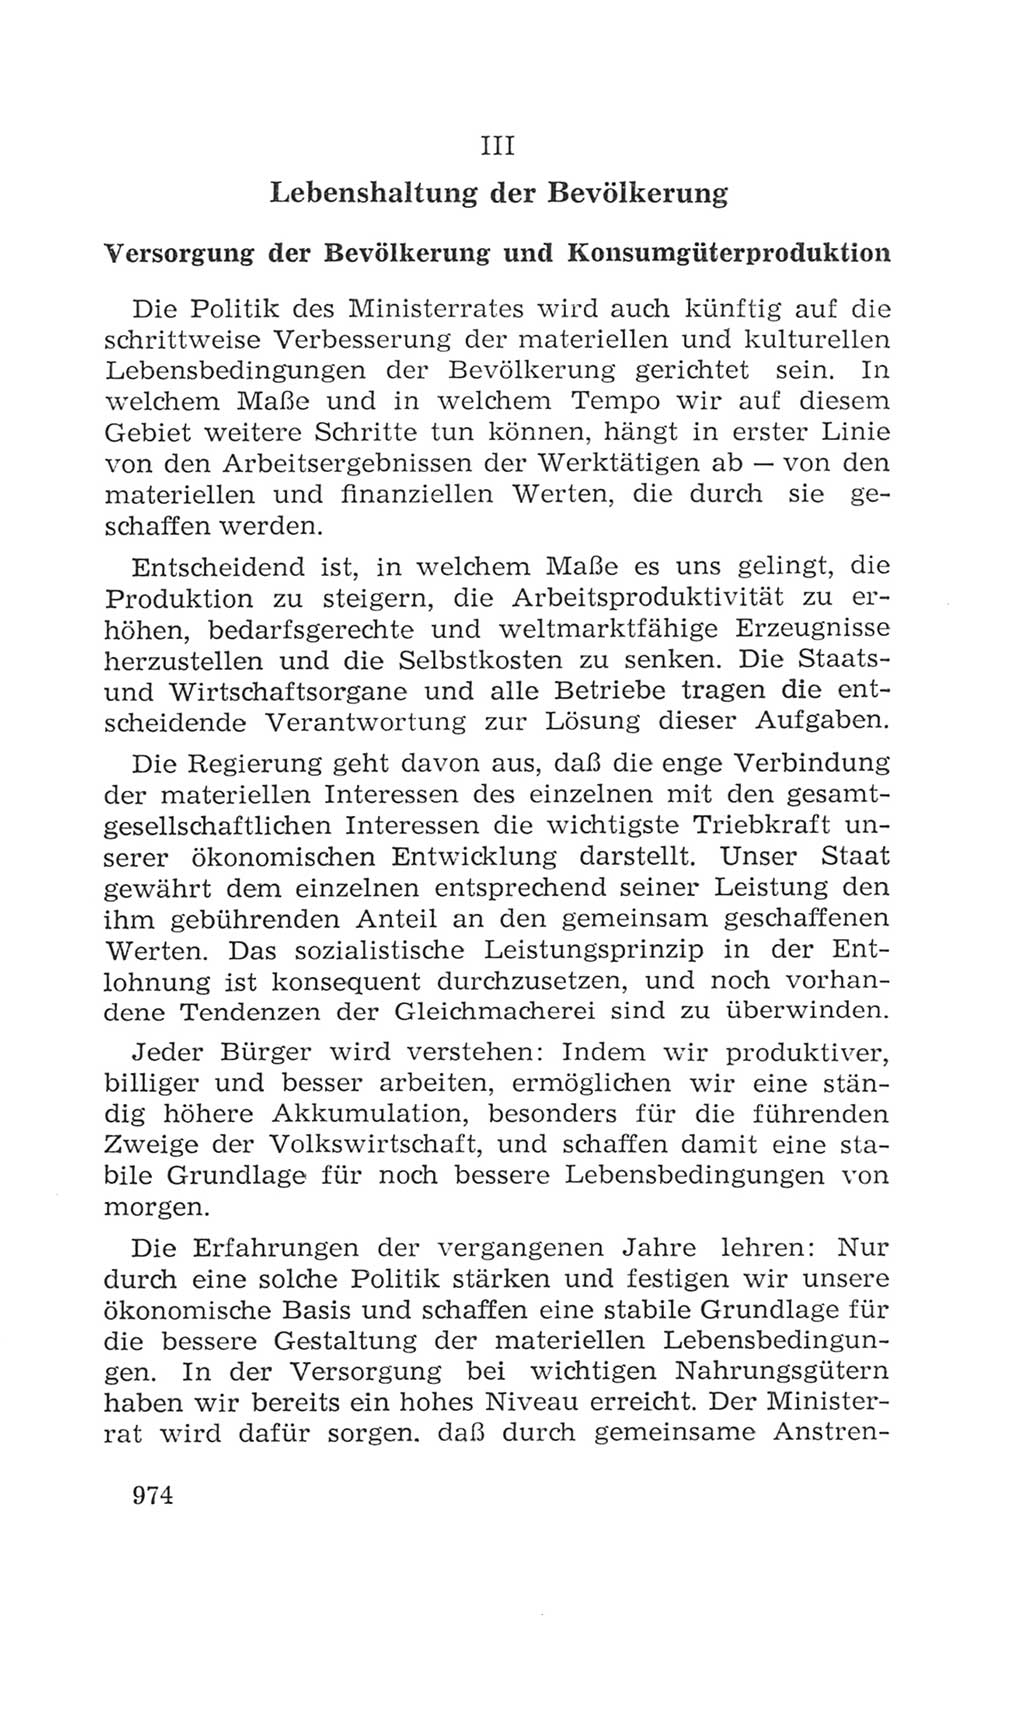 Volkskammer (VK) der Deutschen Demokratischen Republik (DDR), 4. Wahlperiode 1963-1967, Seite 974 (VK. DDR 4. WP. 1963-1967, S. 974)